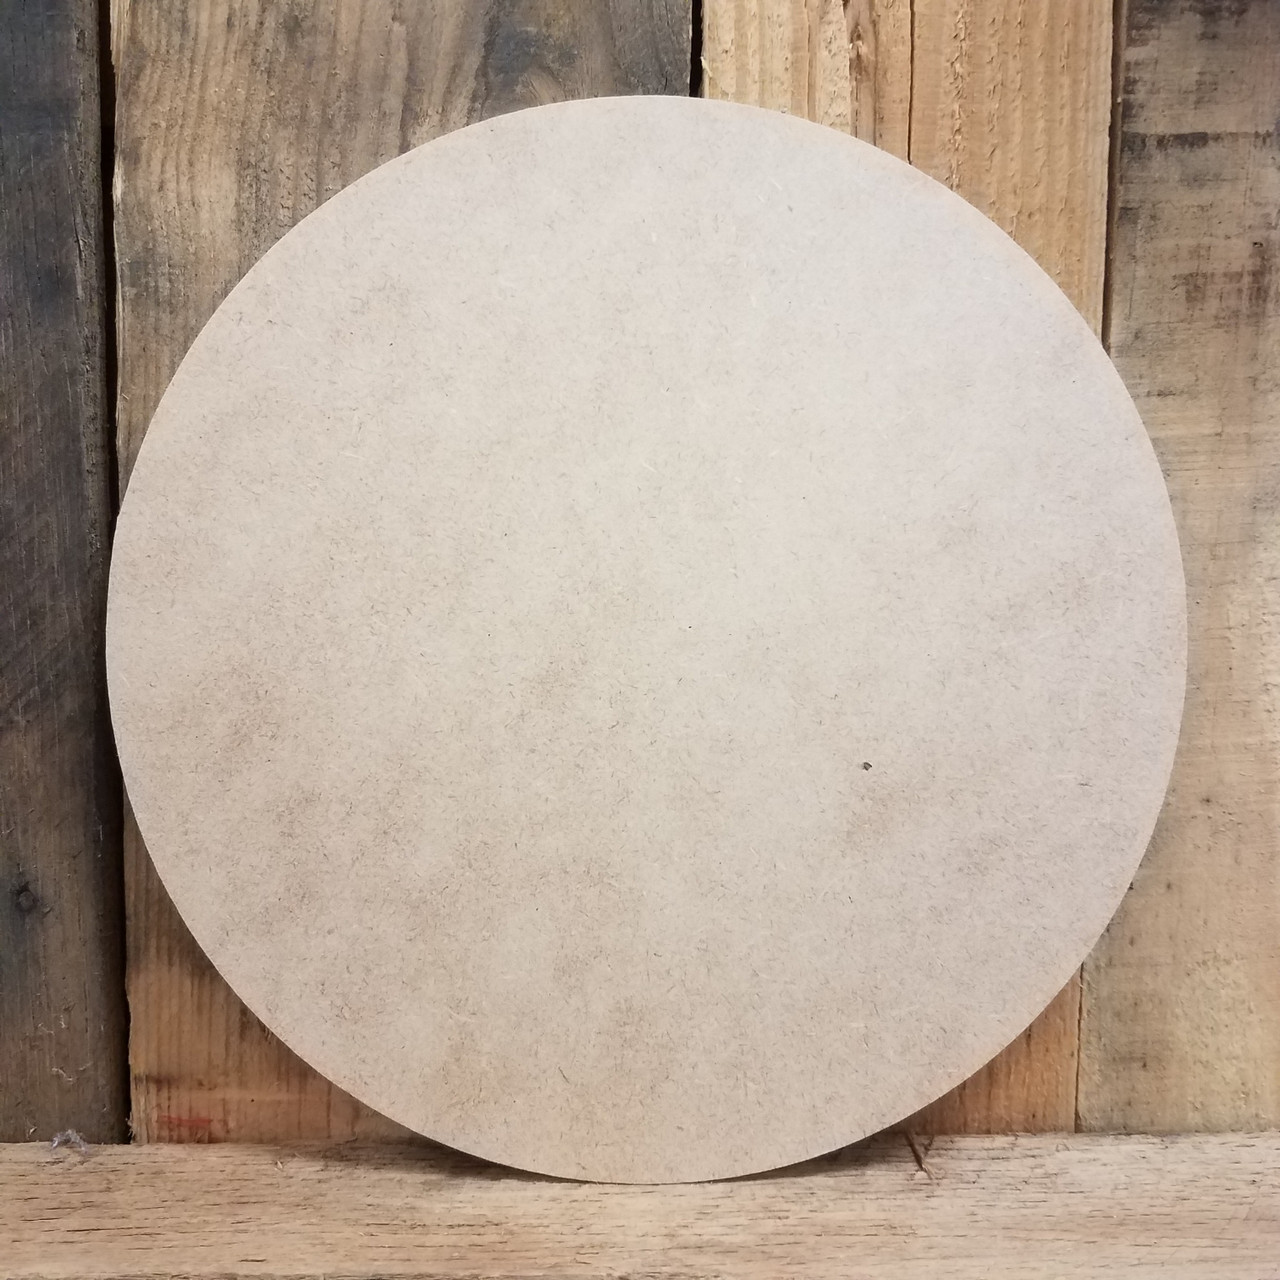 Circle Craft Shape - Wood Circle - Metal Circle